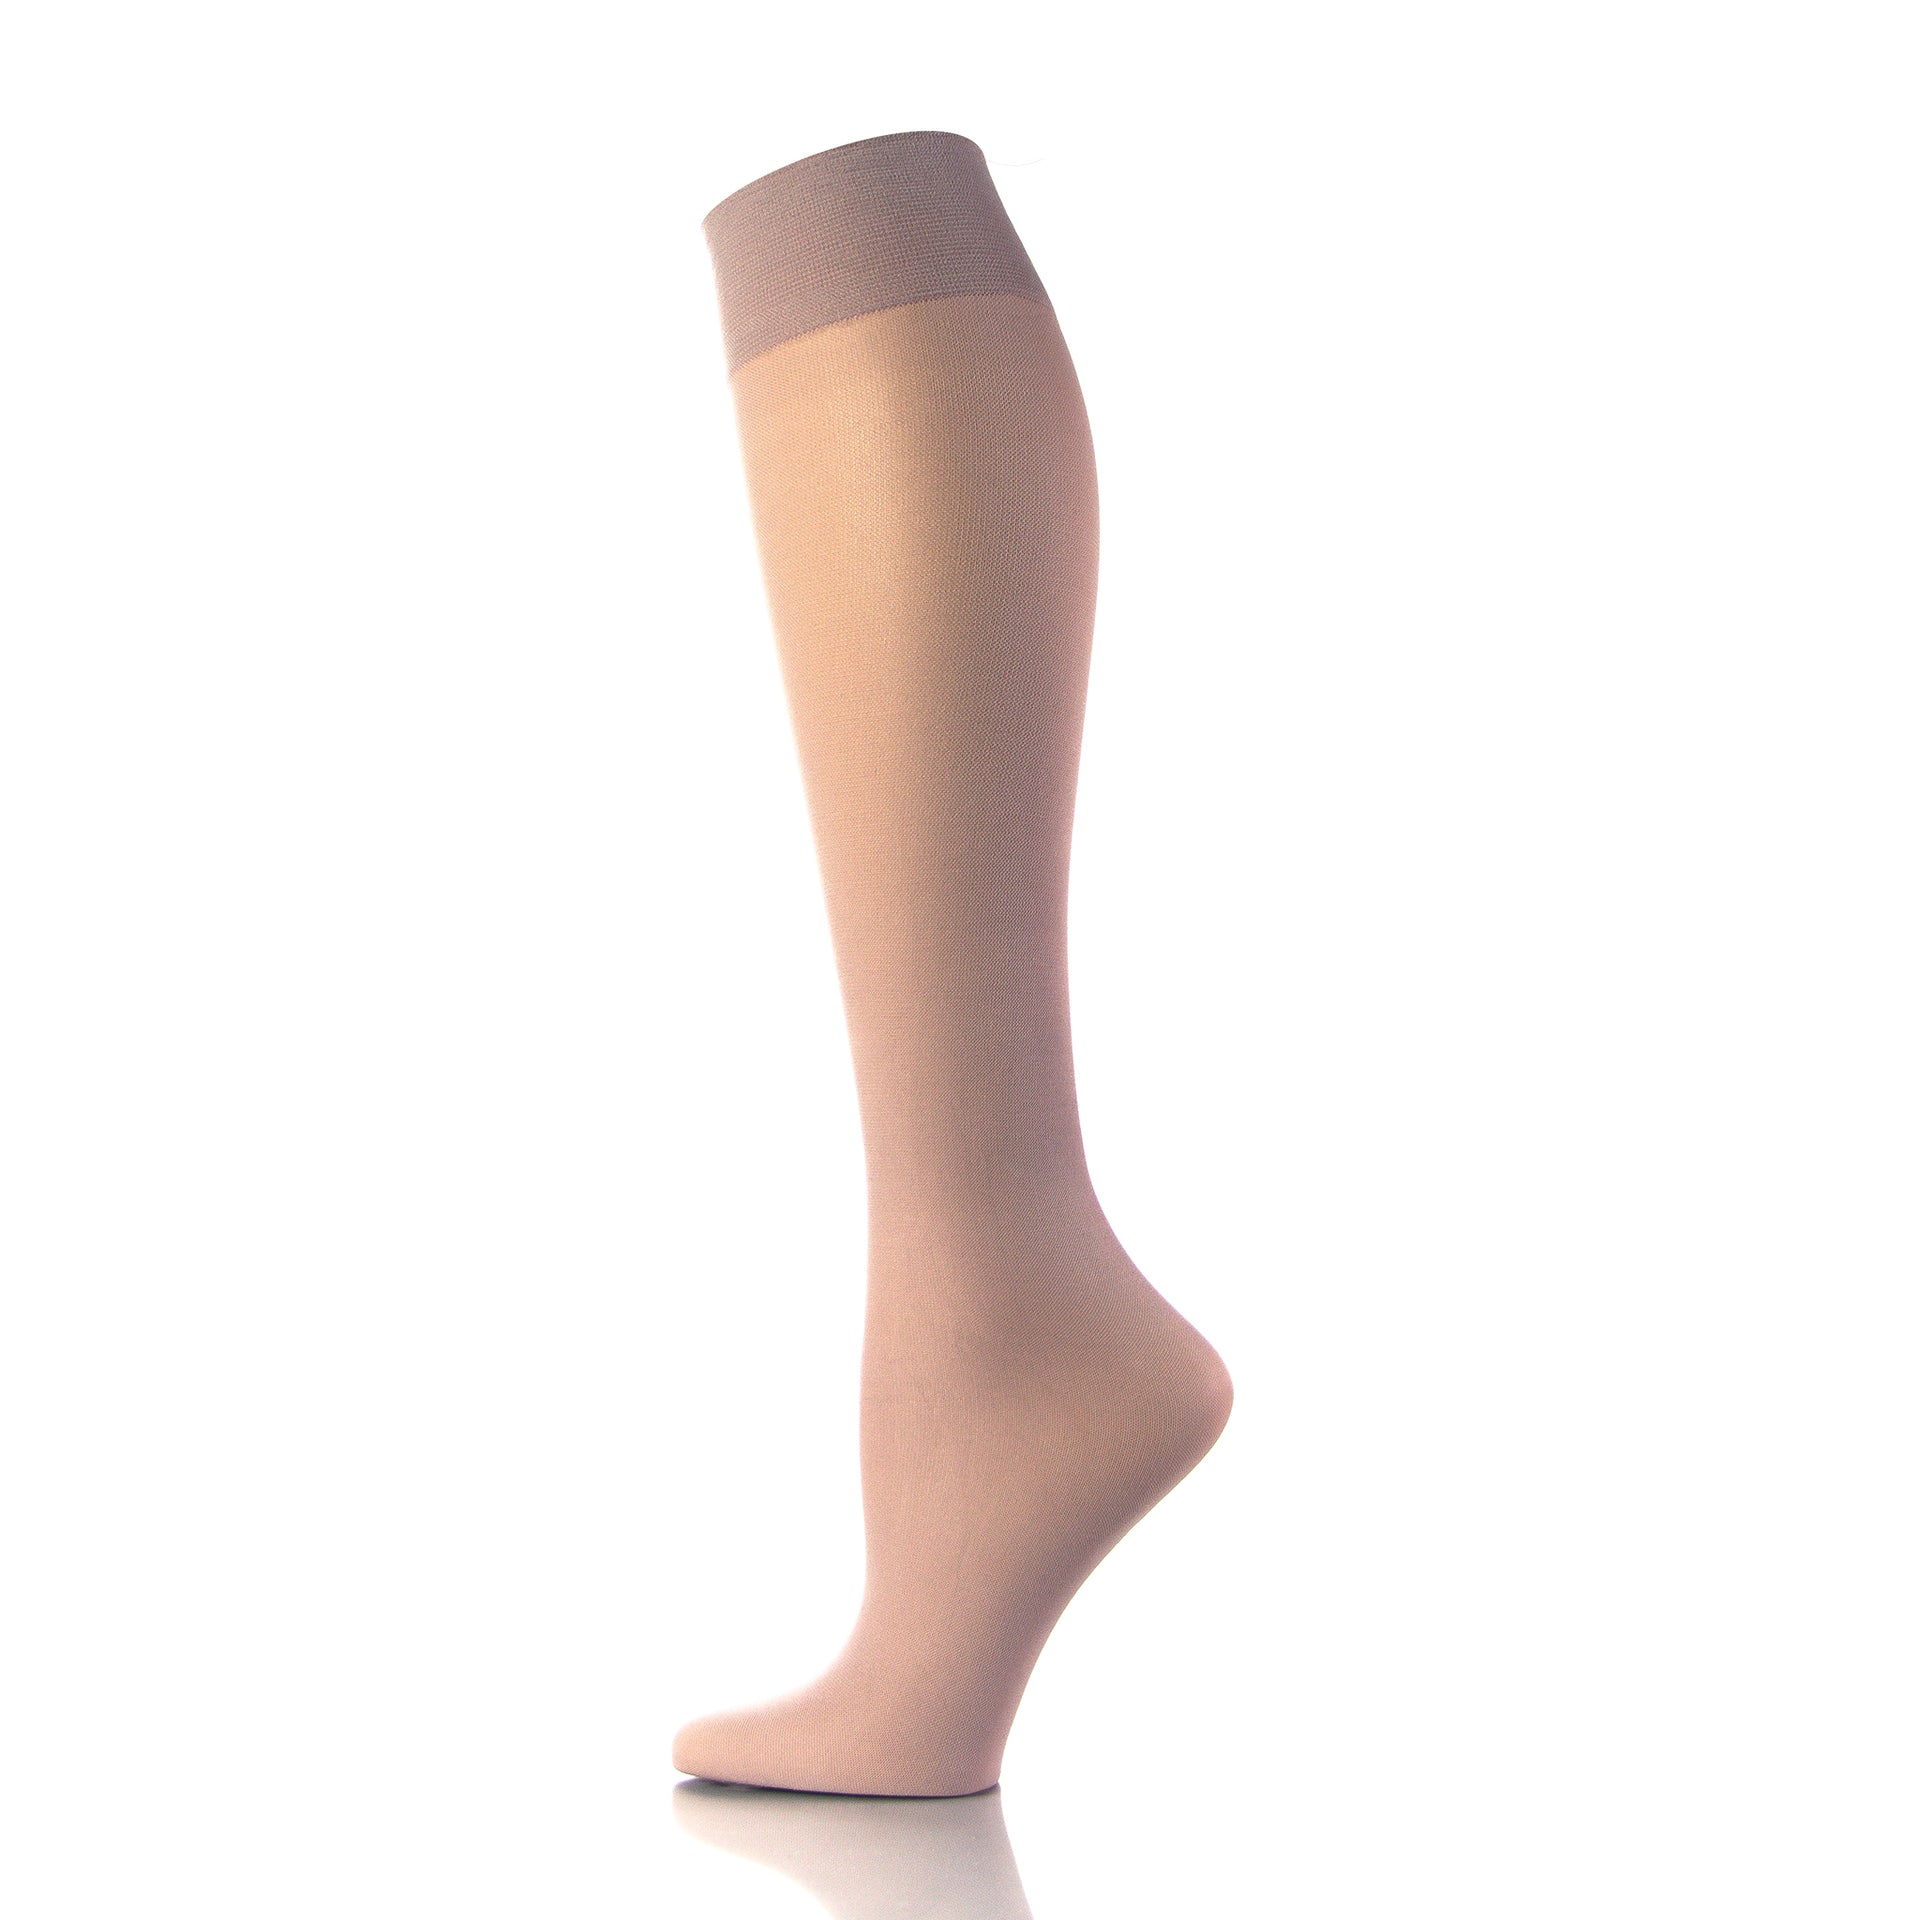 Bas de contention pour femme, couleur peau, vue de l'intérieur de la jambe - Doctor Brace Softmedi